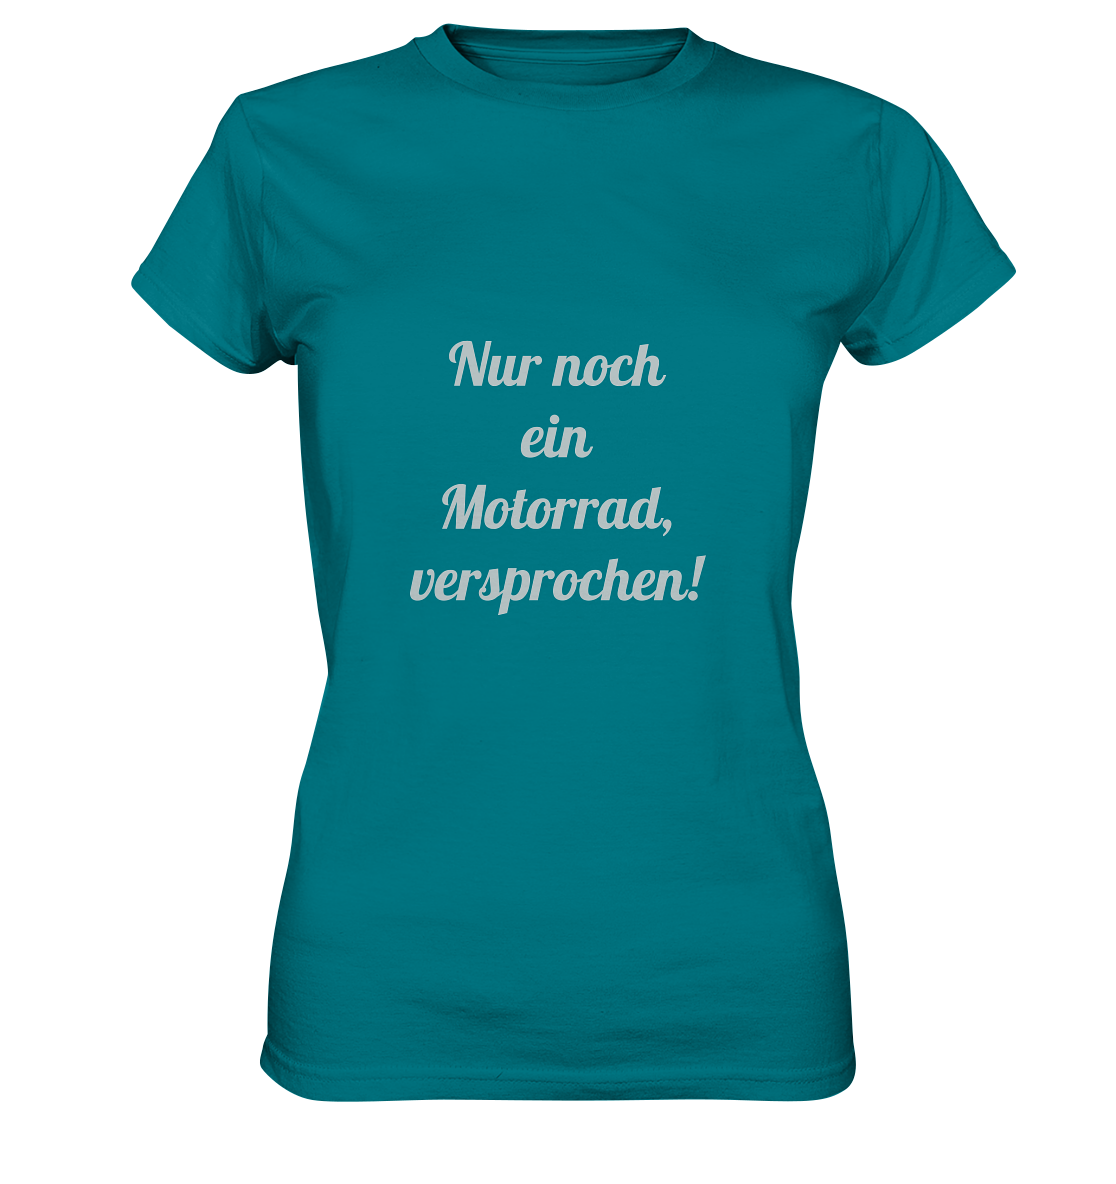 Damen-T-Shirt Rundhals-Ausschnitt, beidseitig bedruckt, vorn "Nur noch ein Motorrad - versprochen!" hinten crossed fingers, türkis